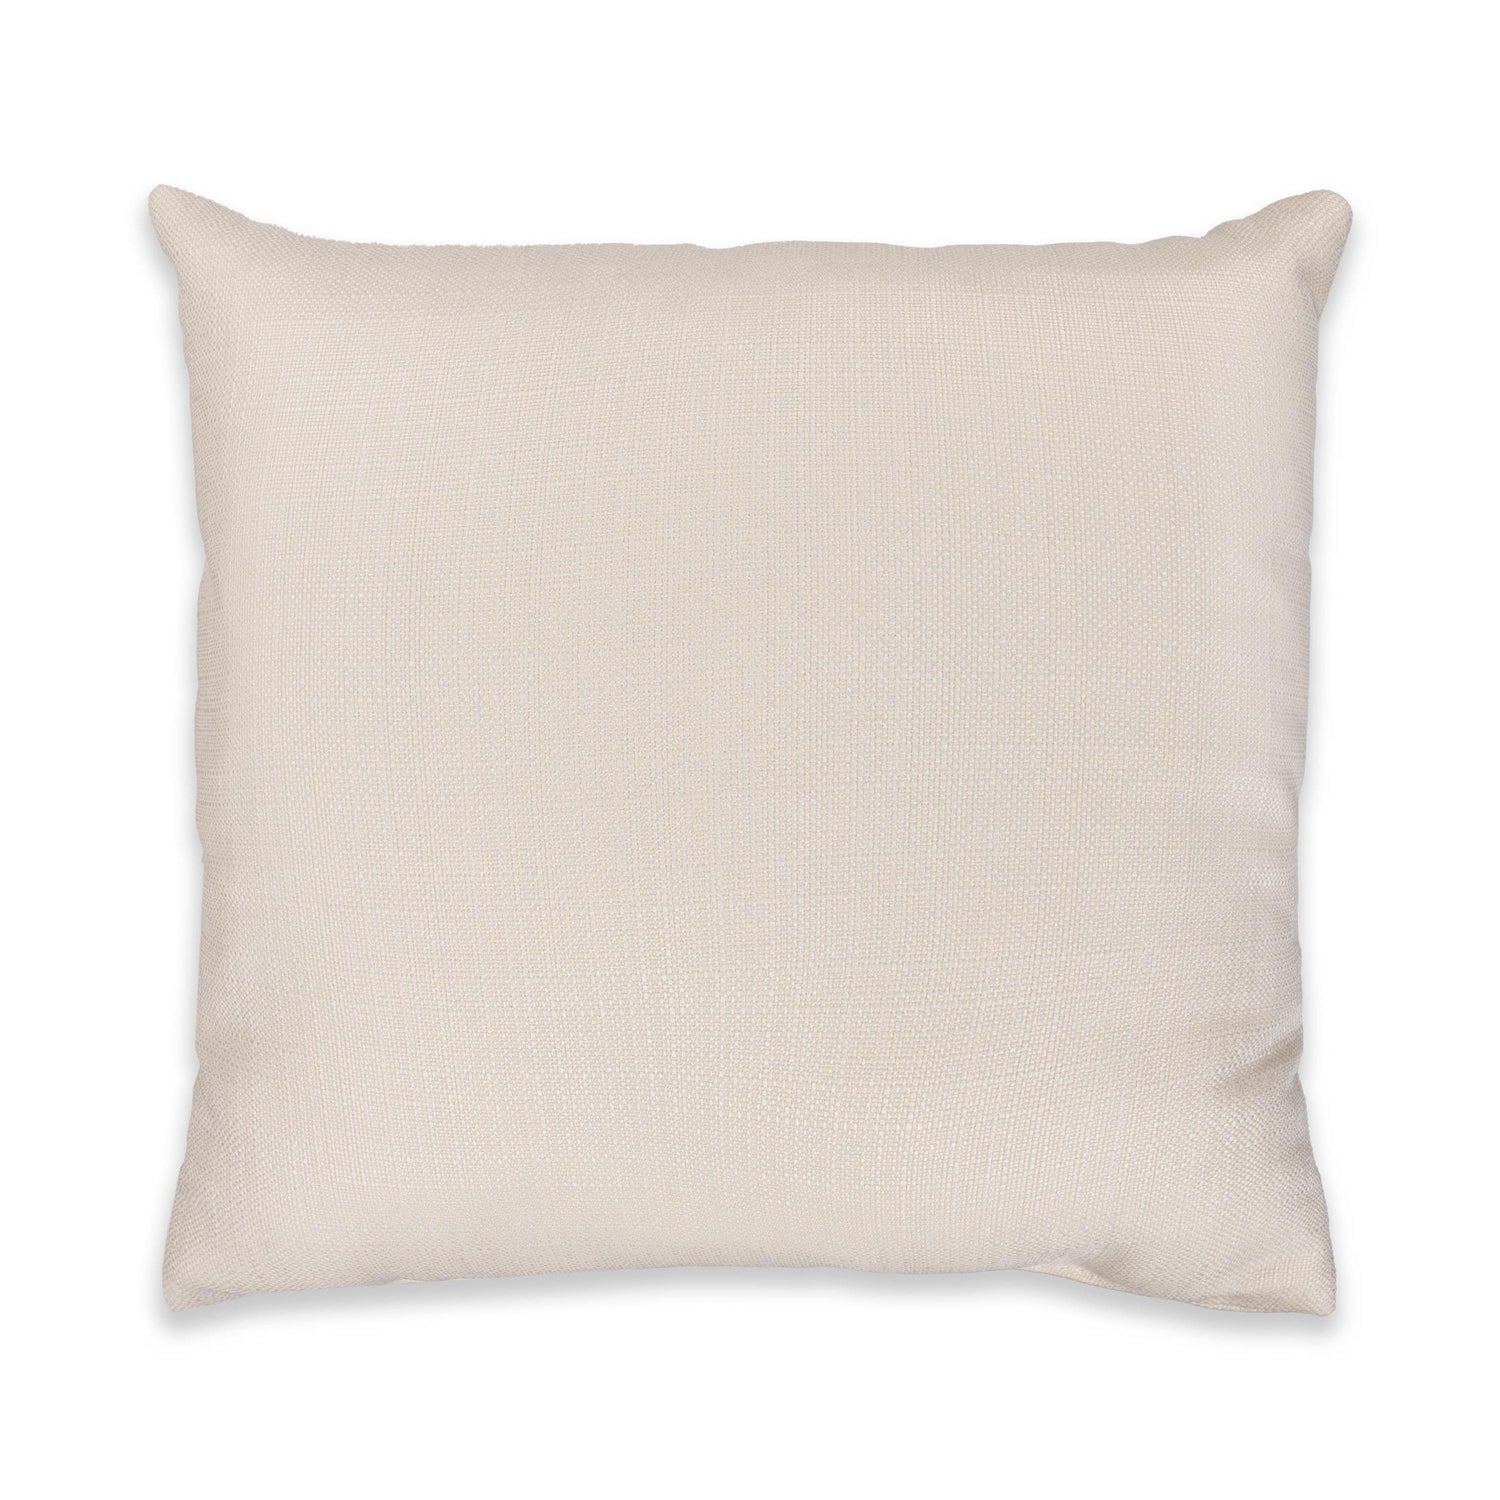 Texas A&M Aggies Gradient Pillow